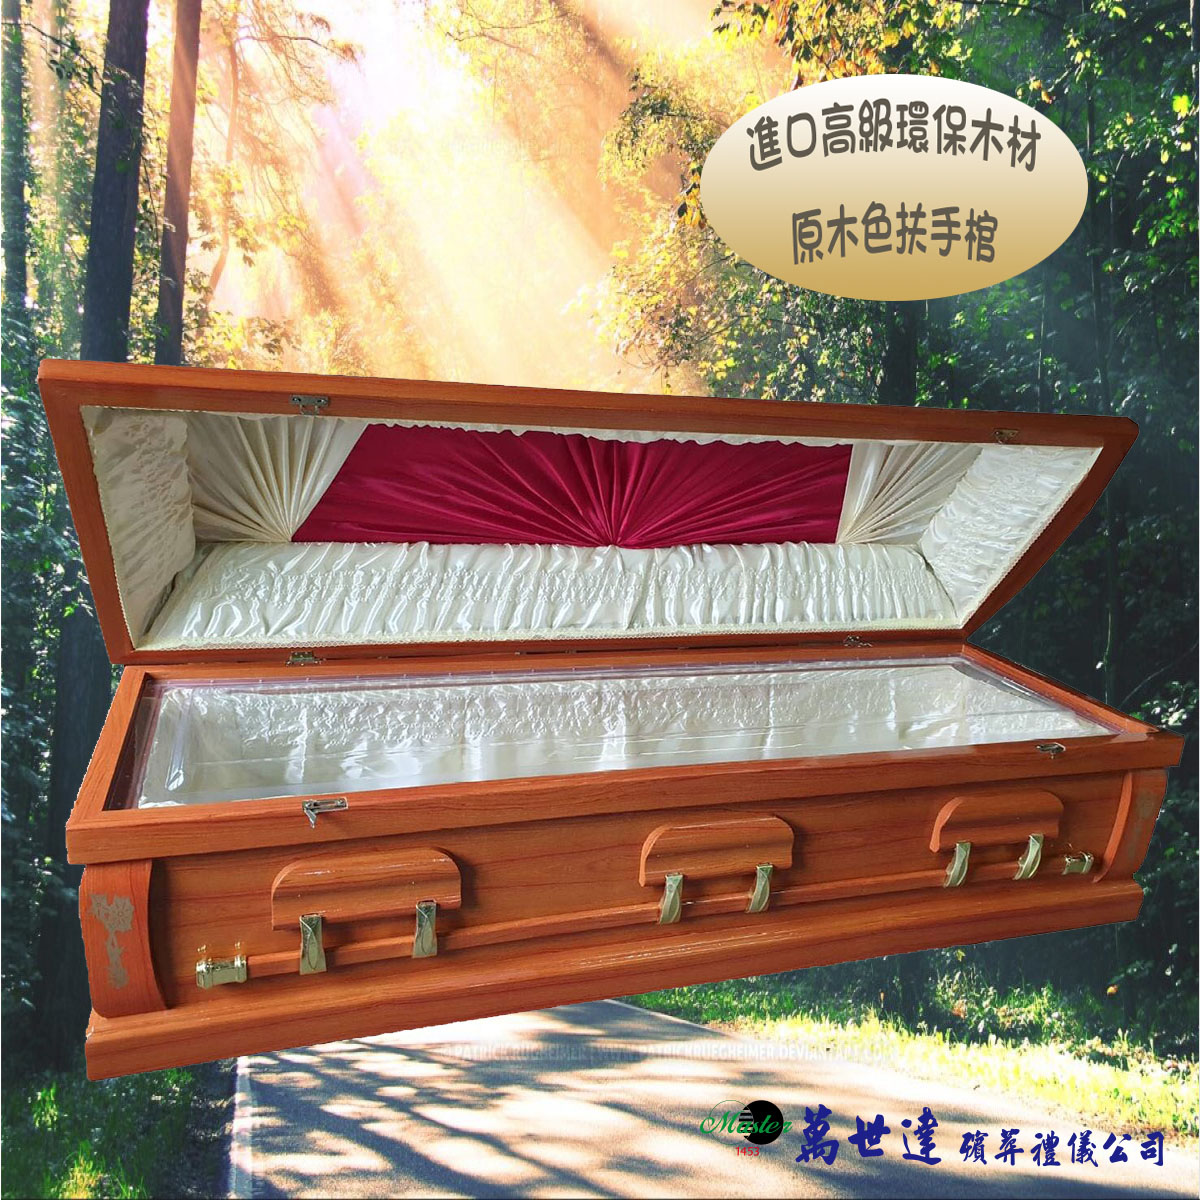 【入殮出】十字架基督天主火化平蓋原木色扶手棺2.2尺